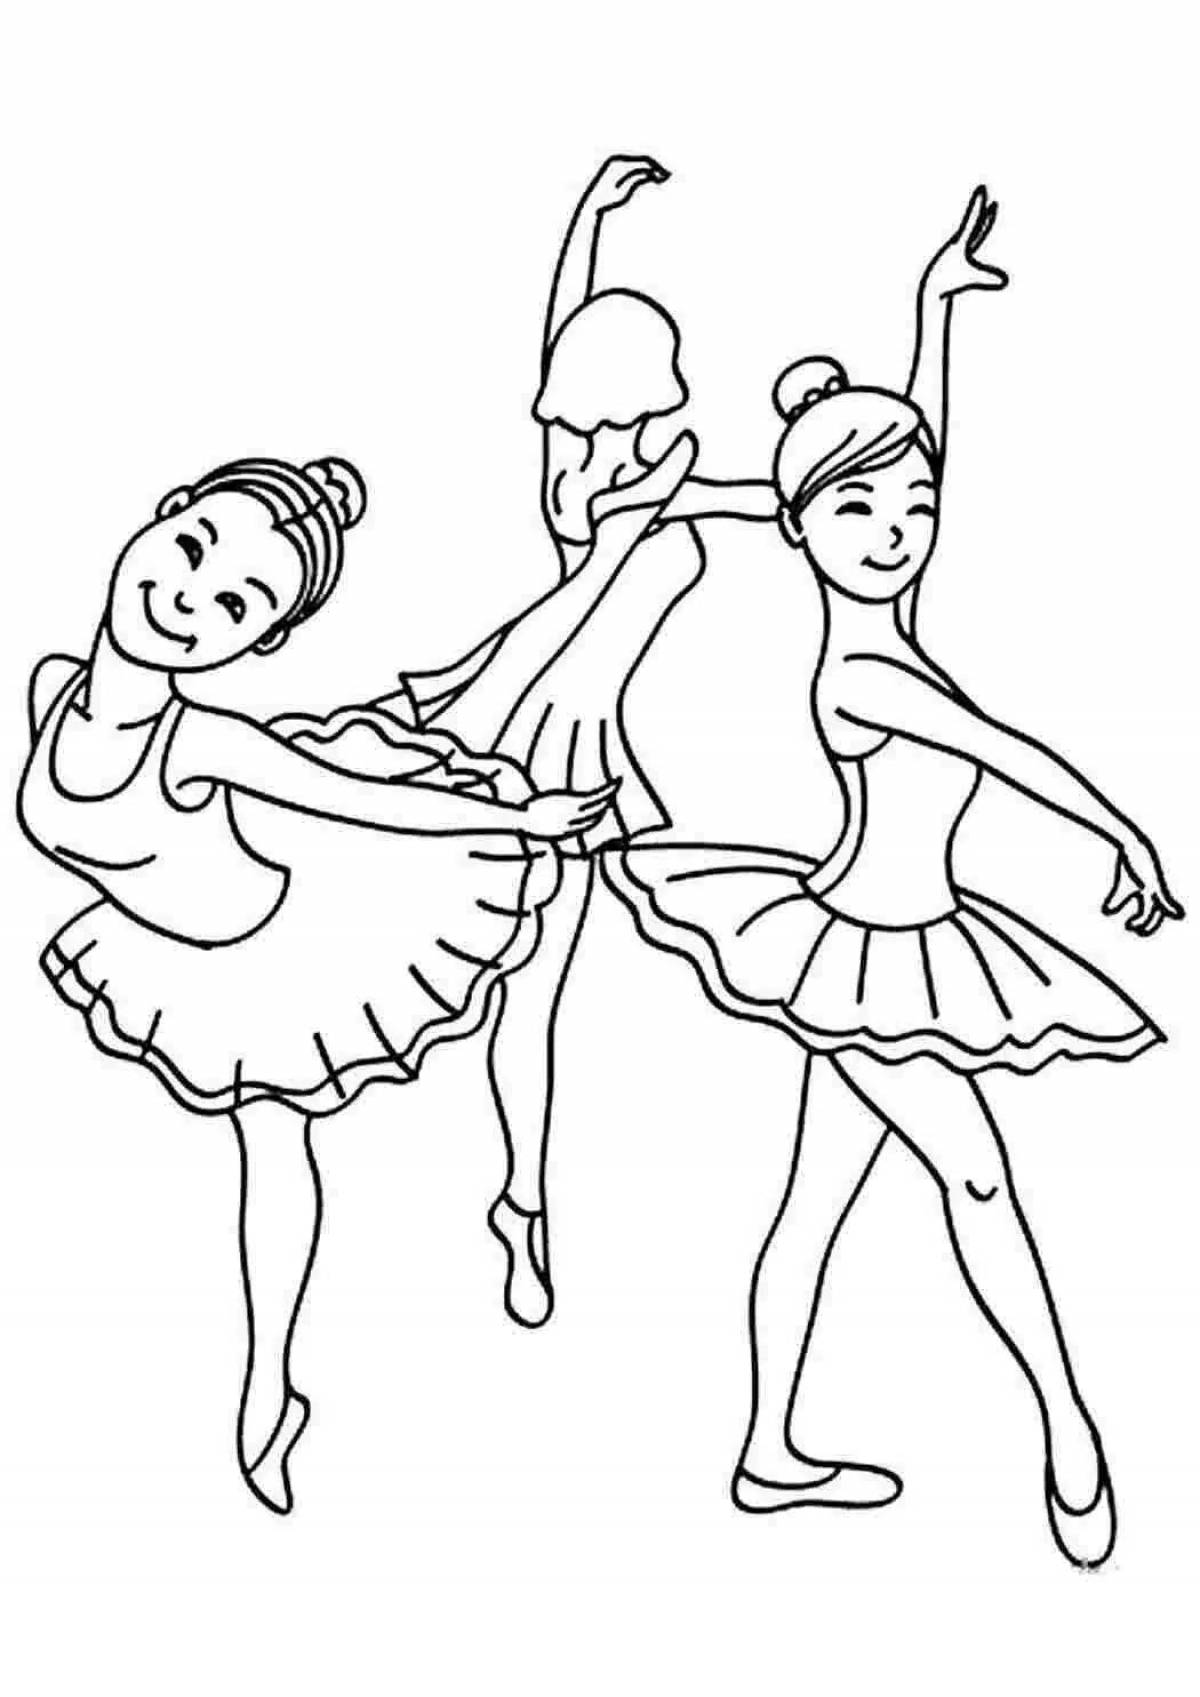 Танцевать и рисовать. Балерина раскраска для детей. Раскраска танцы. Раскраска "балерины". Раскраска детская балерина.